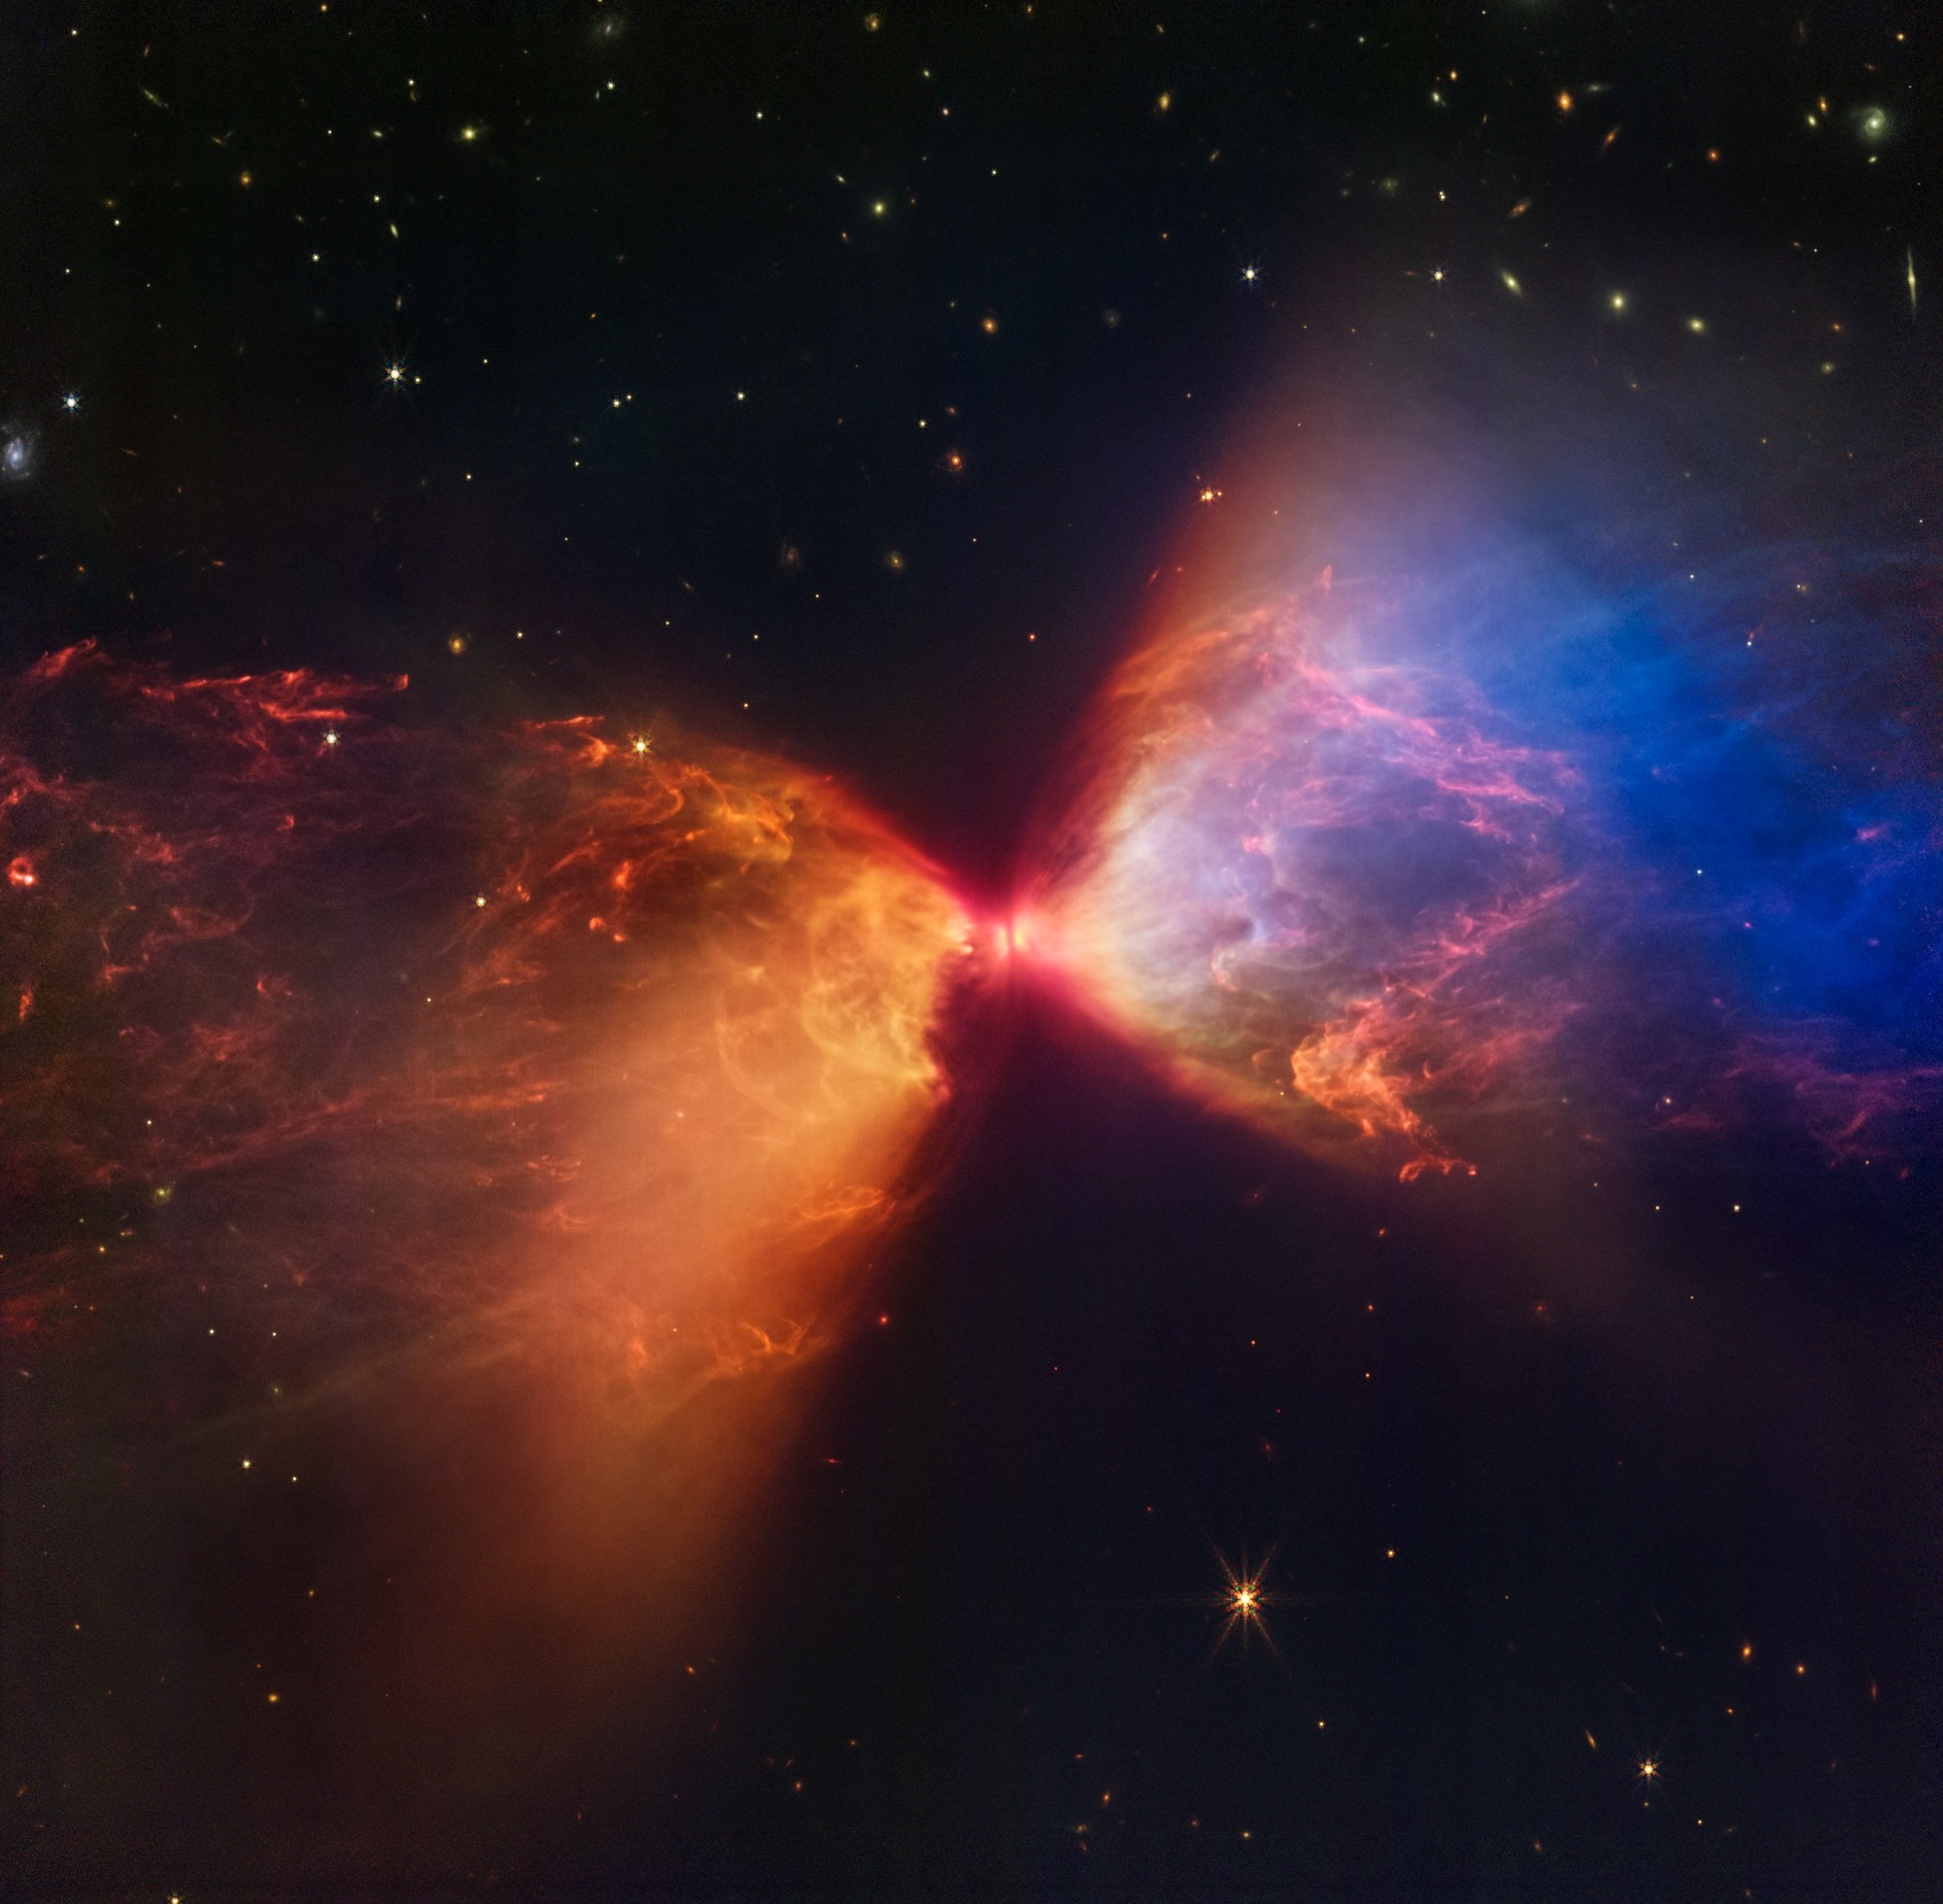 Protogwiazda Kosmiczny Teleskop Jamesa Webba klepsydra